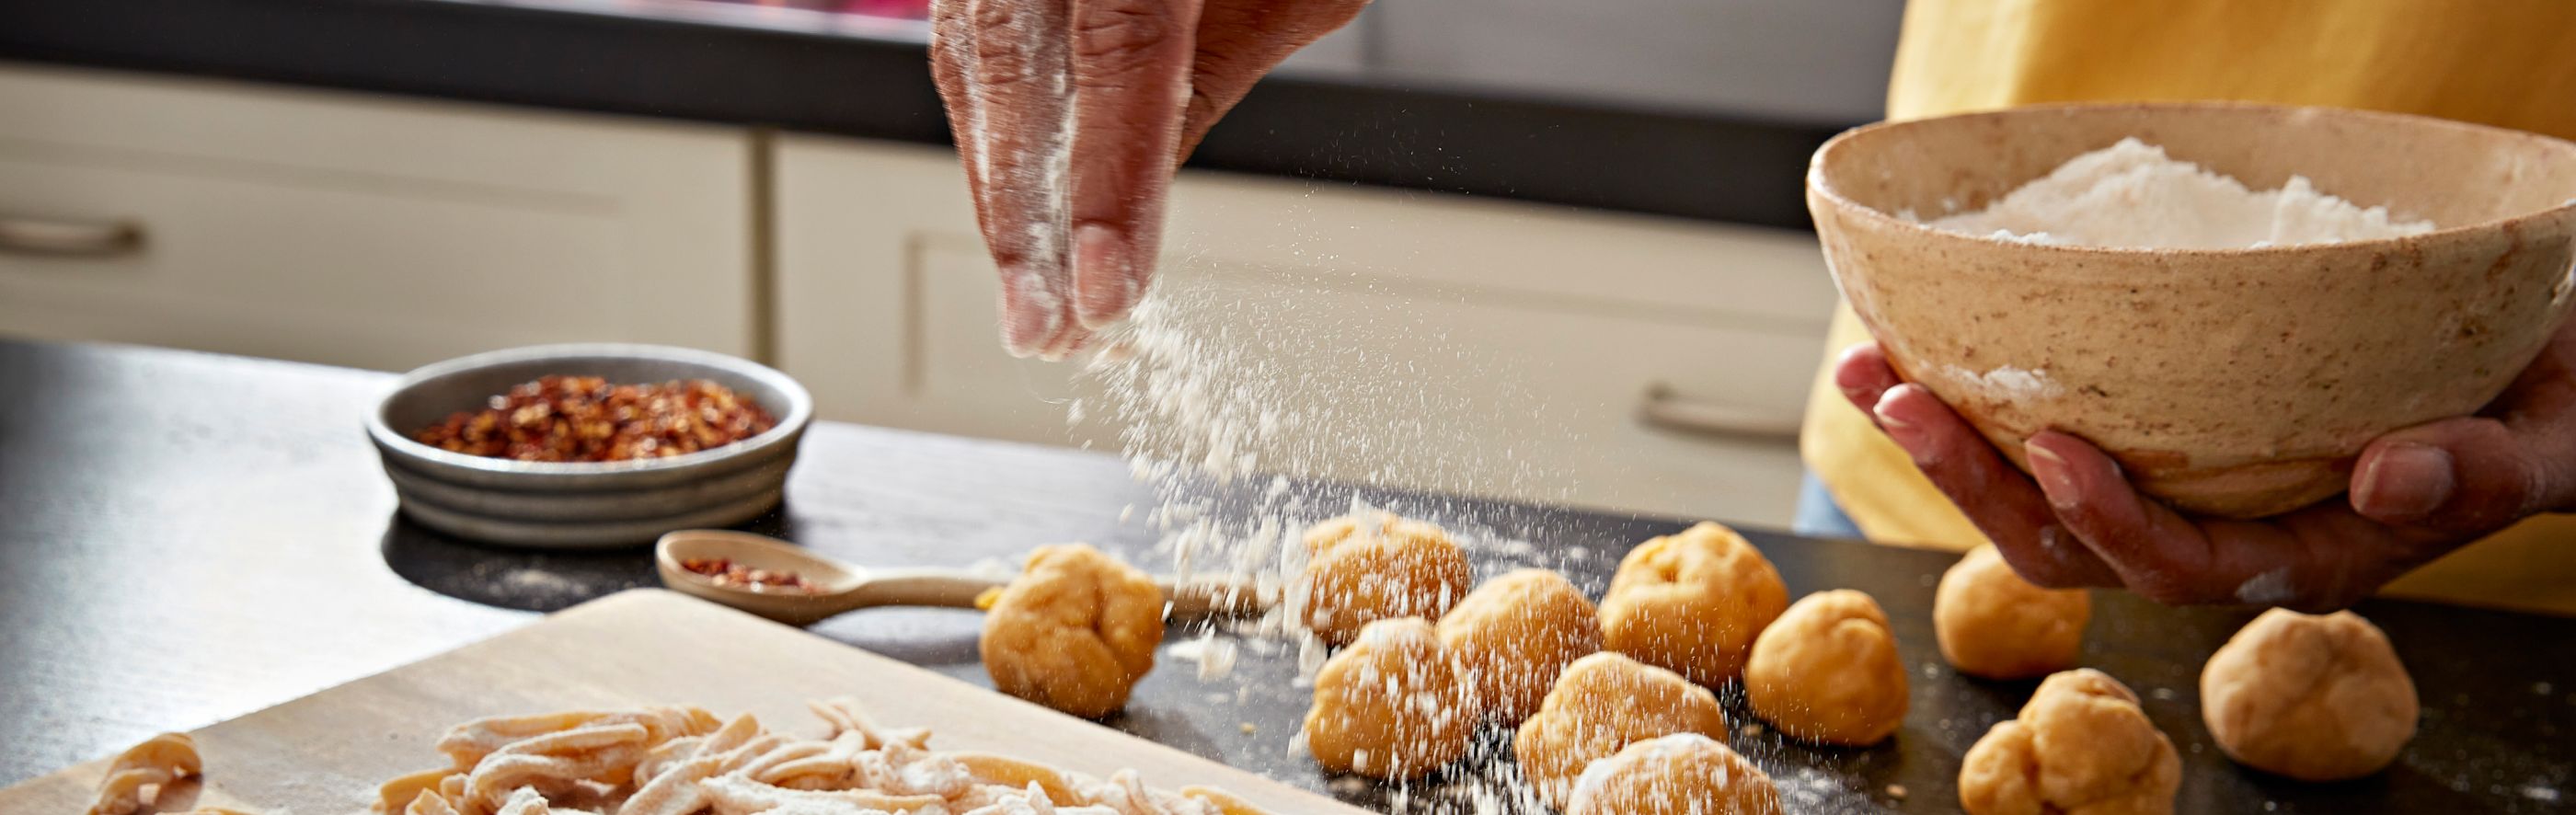 A person sprinkling flour over dough